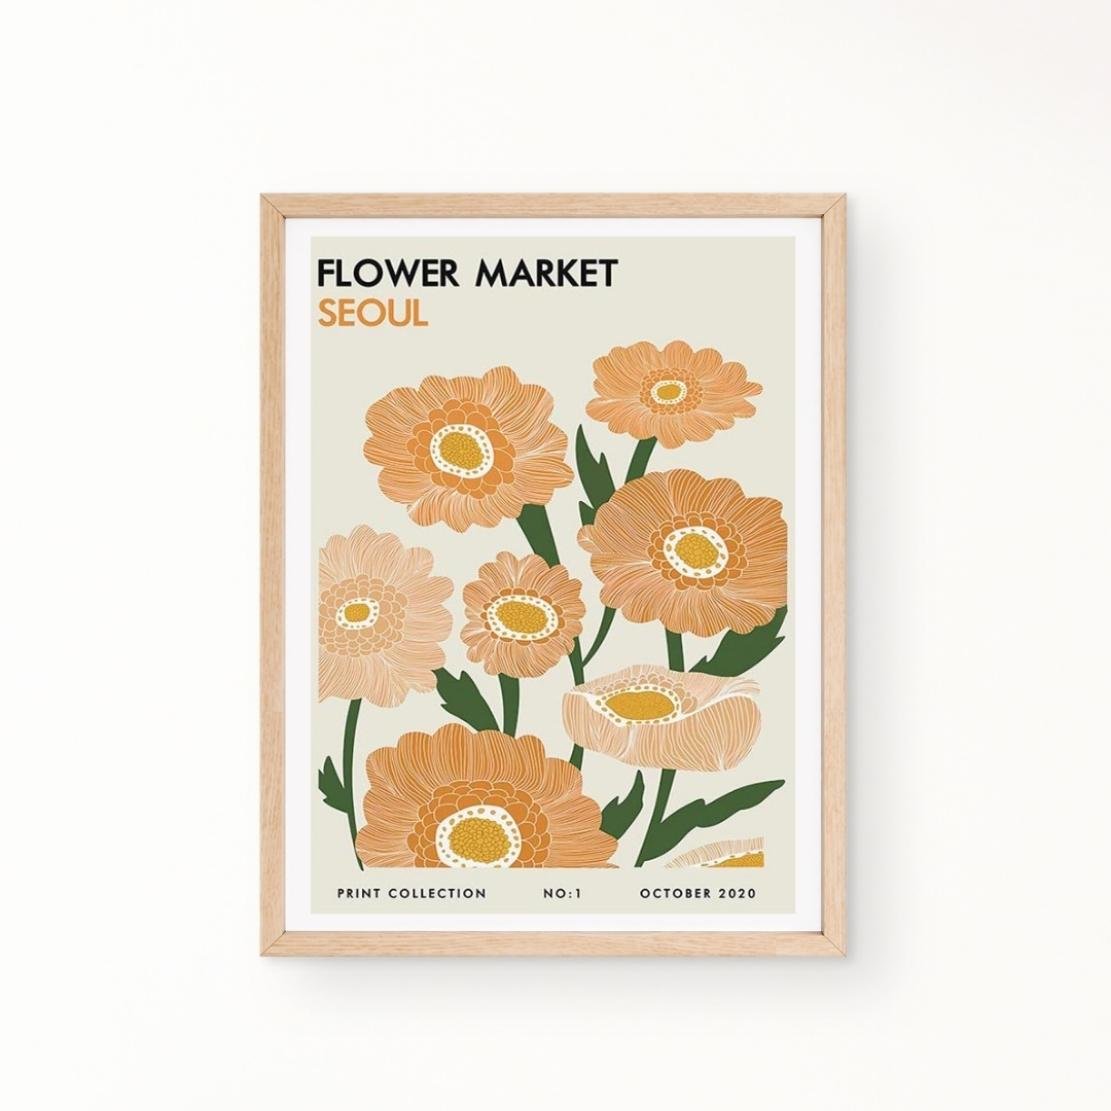 Flower market Seoul art poster